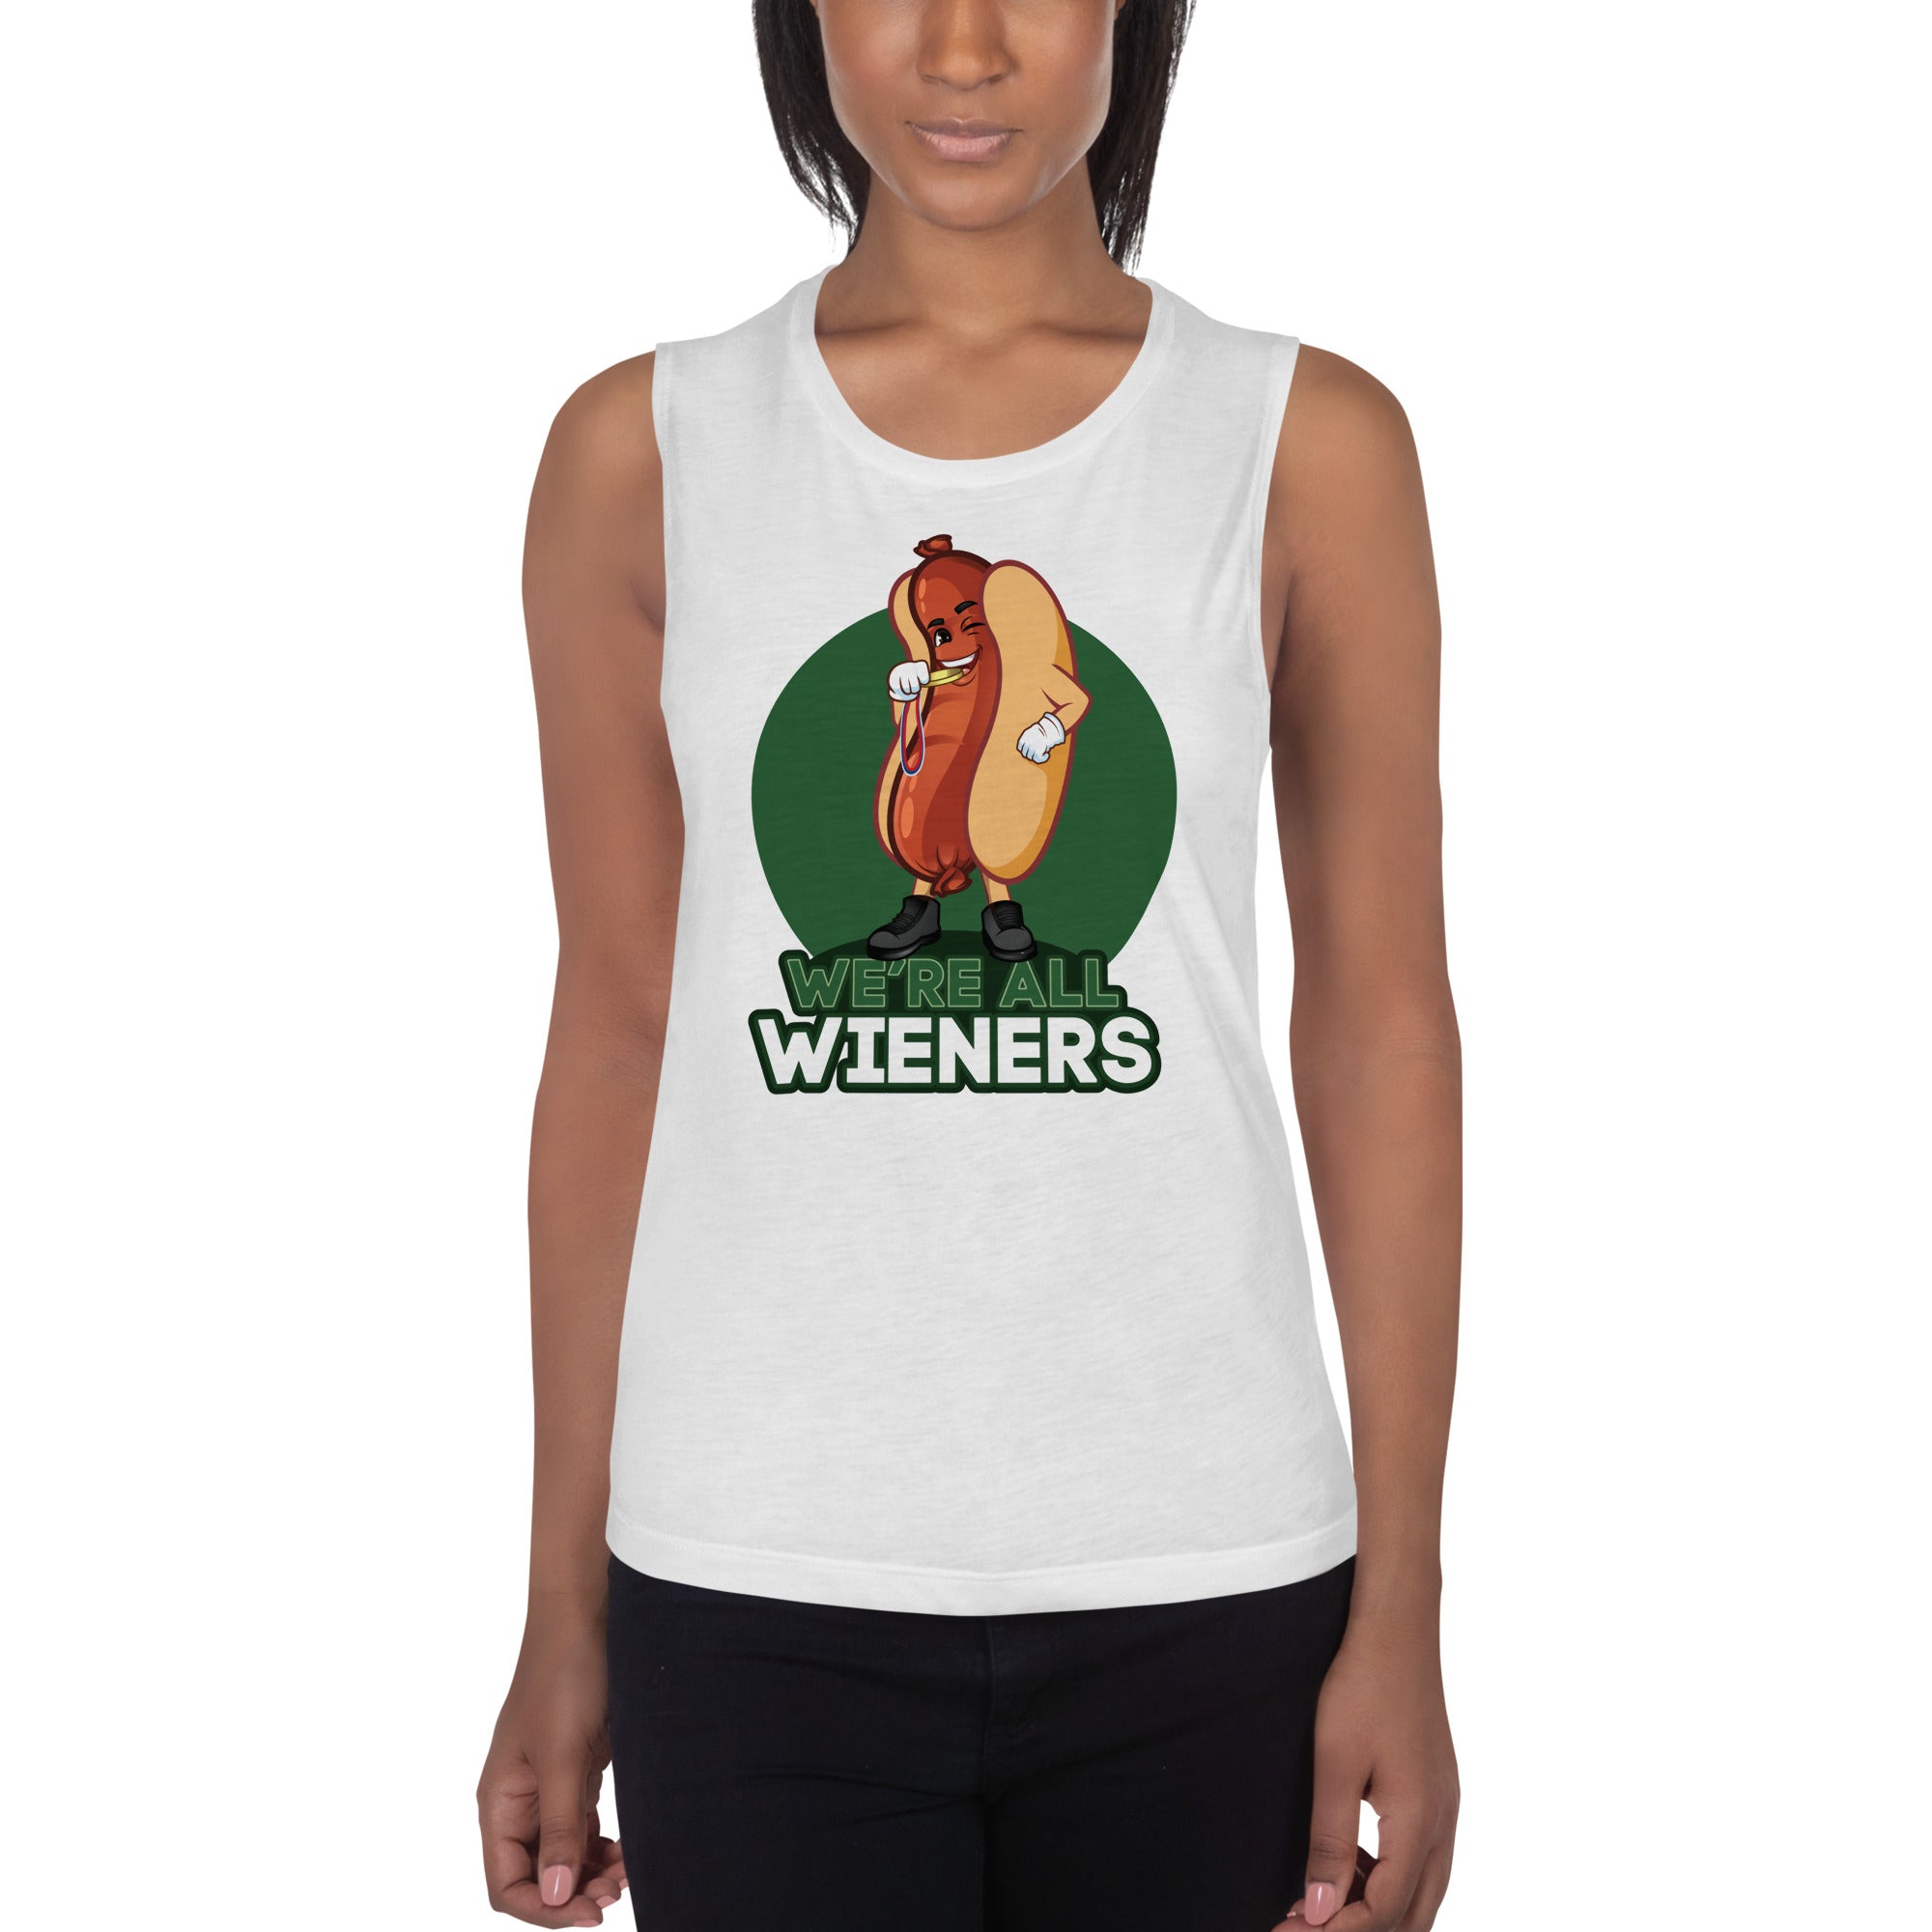 We're All Wieners Women's Muscle Tank - Green